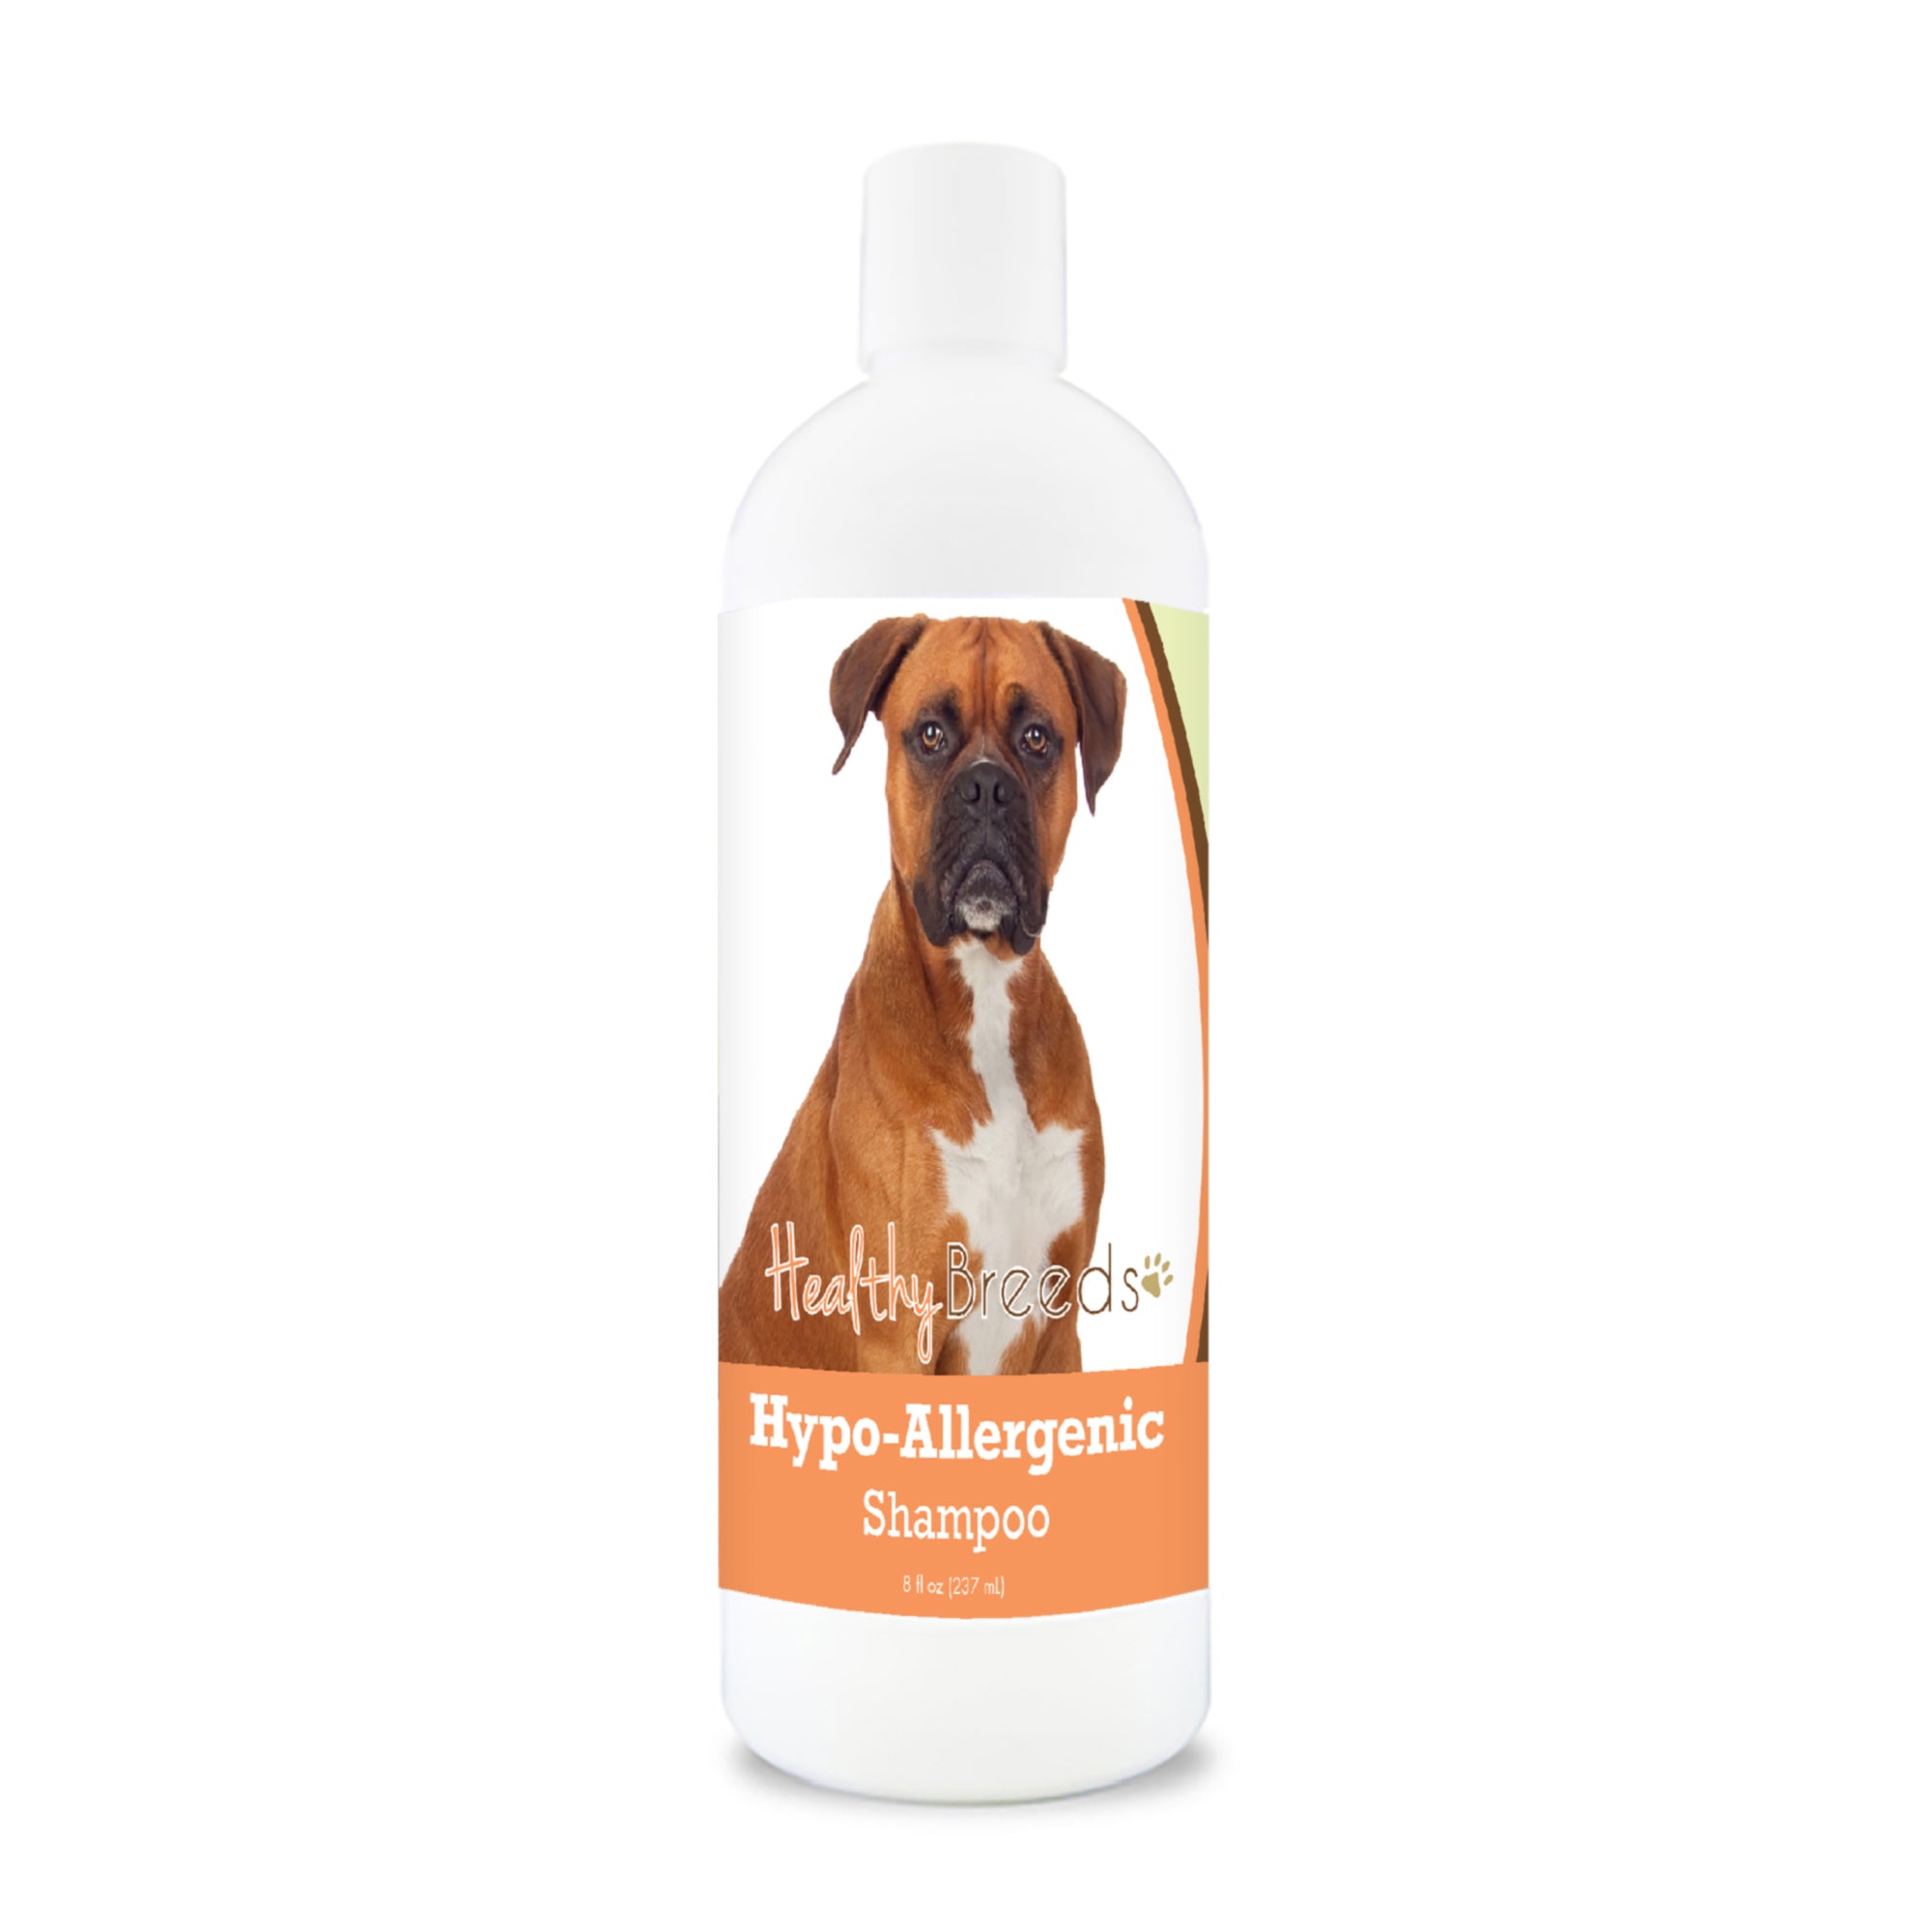 Boxer Hypo-Allergenic Shampoo 8 oz